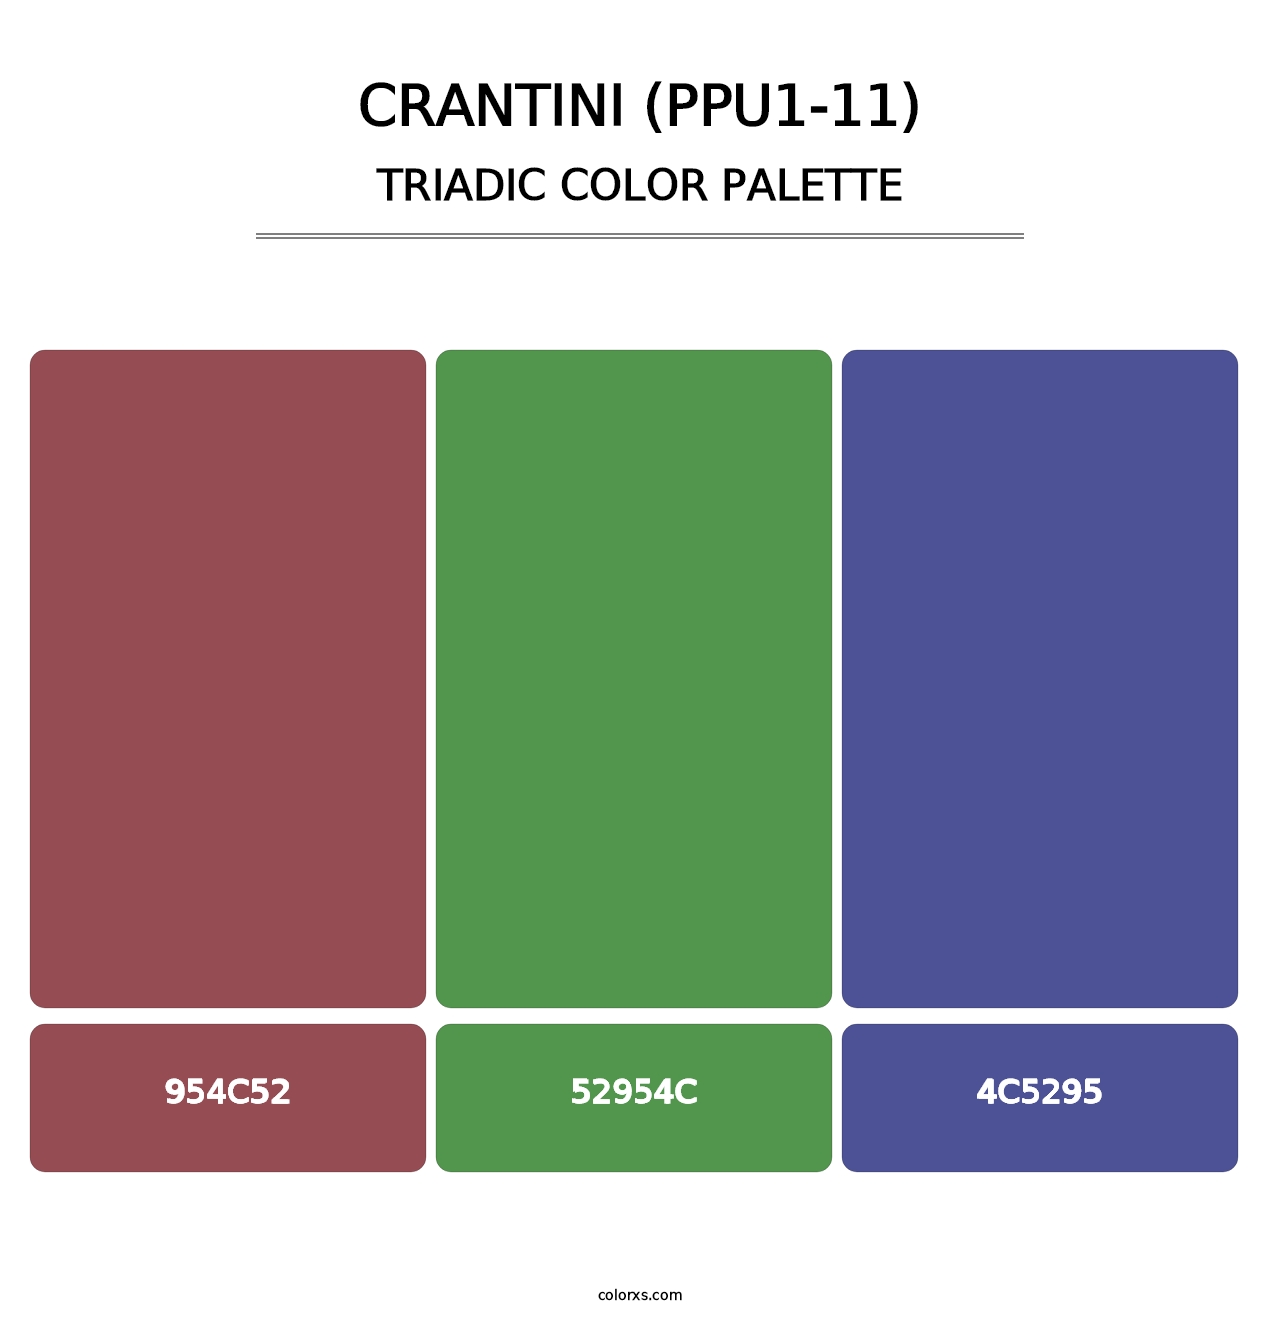 Crantini (PPU1-11) - Triadic Color Palette